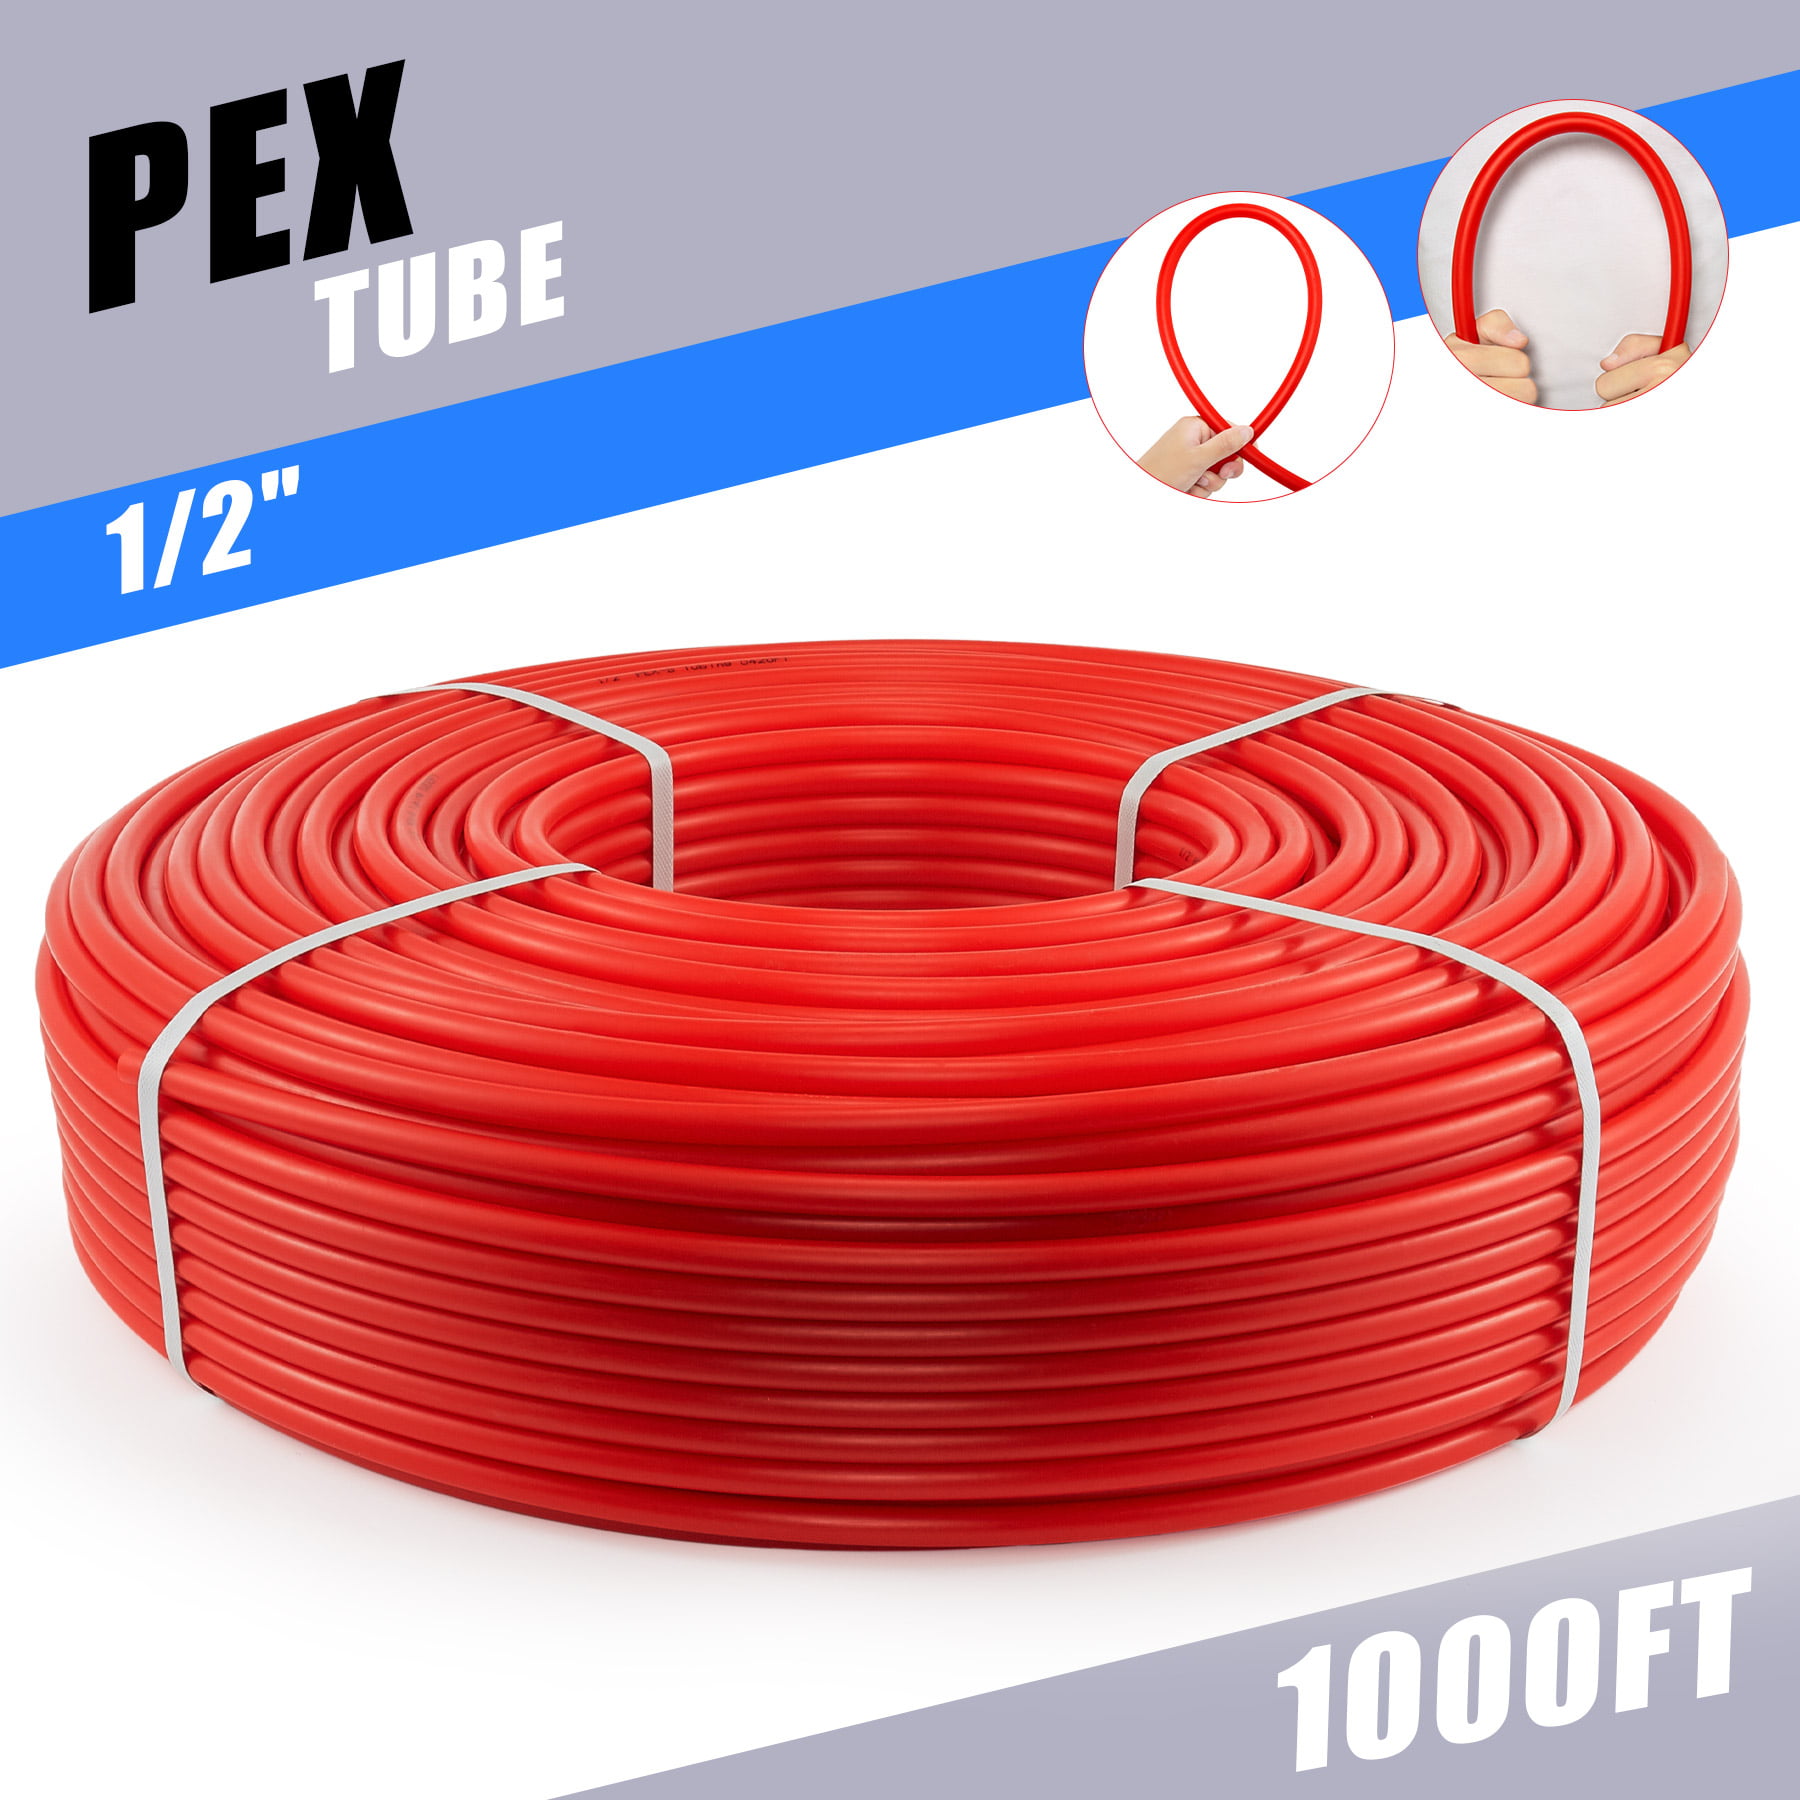 PEX Radiant Heat Pipe PEX RV Sewer Tubing PEX Tube Water Hose 1/2in 1000ft PEX-B 